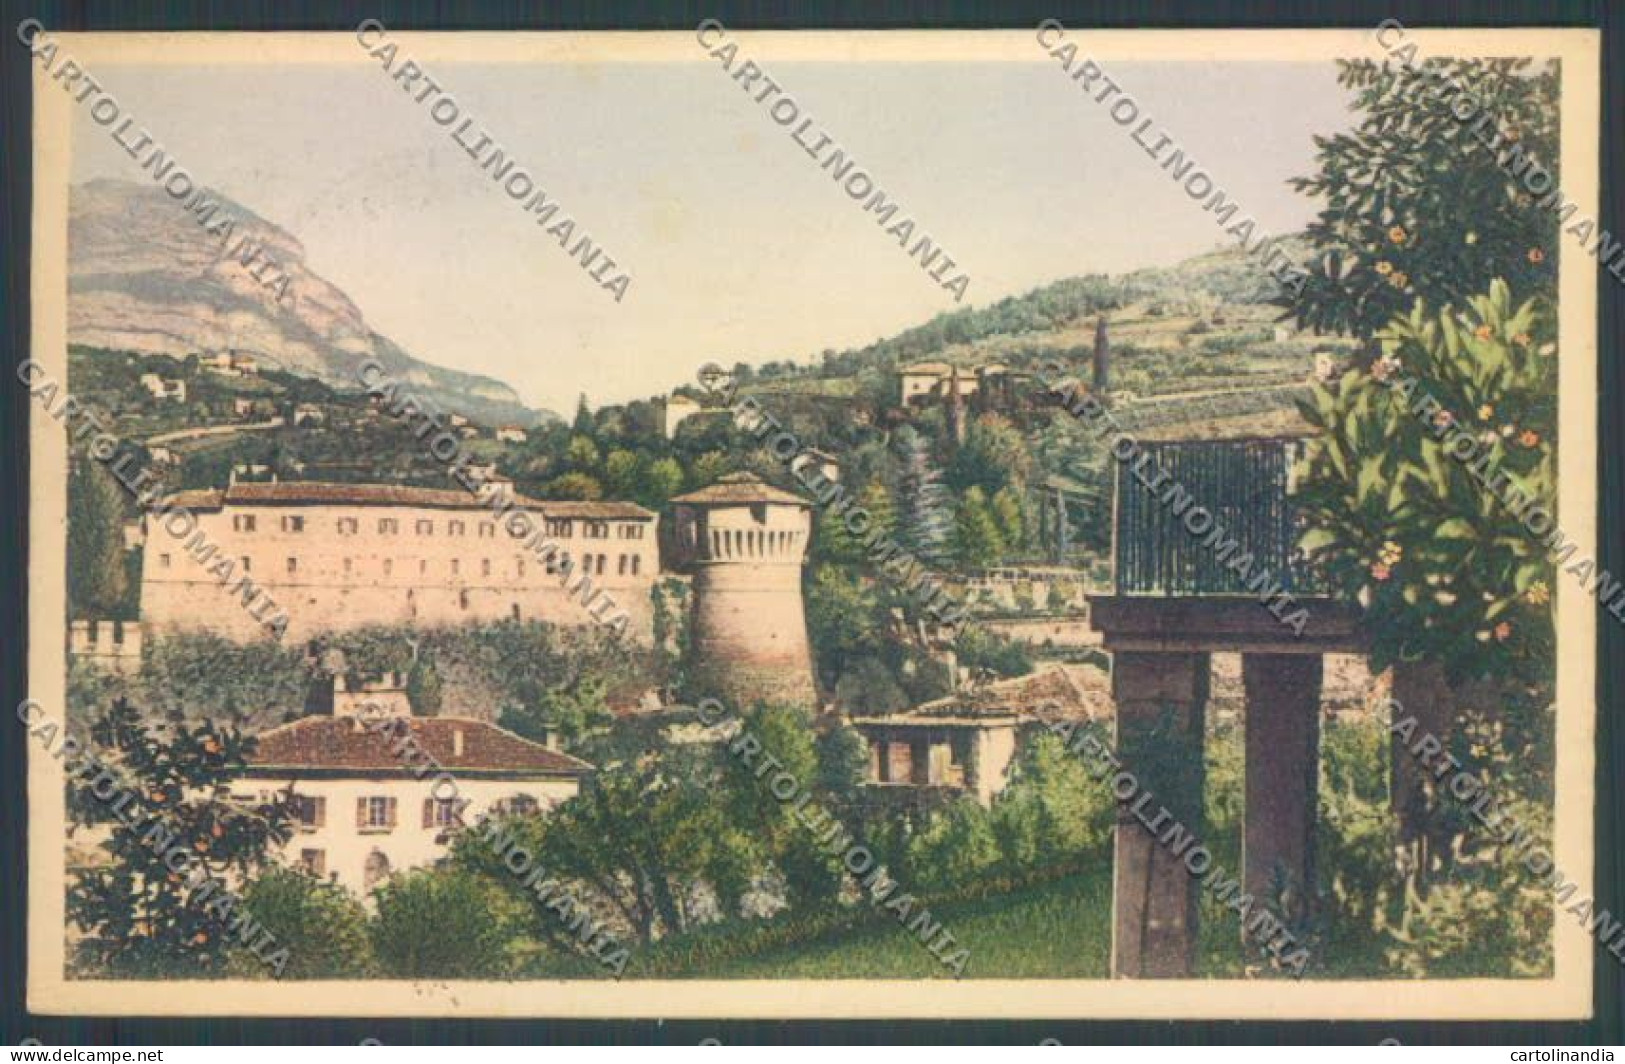 Trento Rovereto Cartolina ZB1108 - Trento